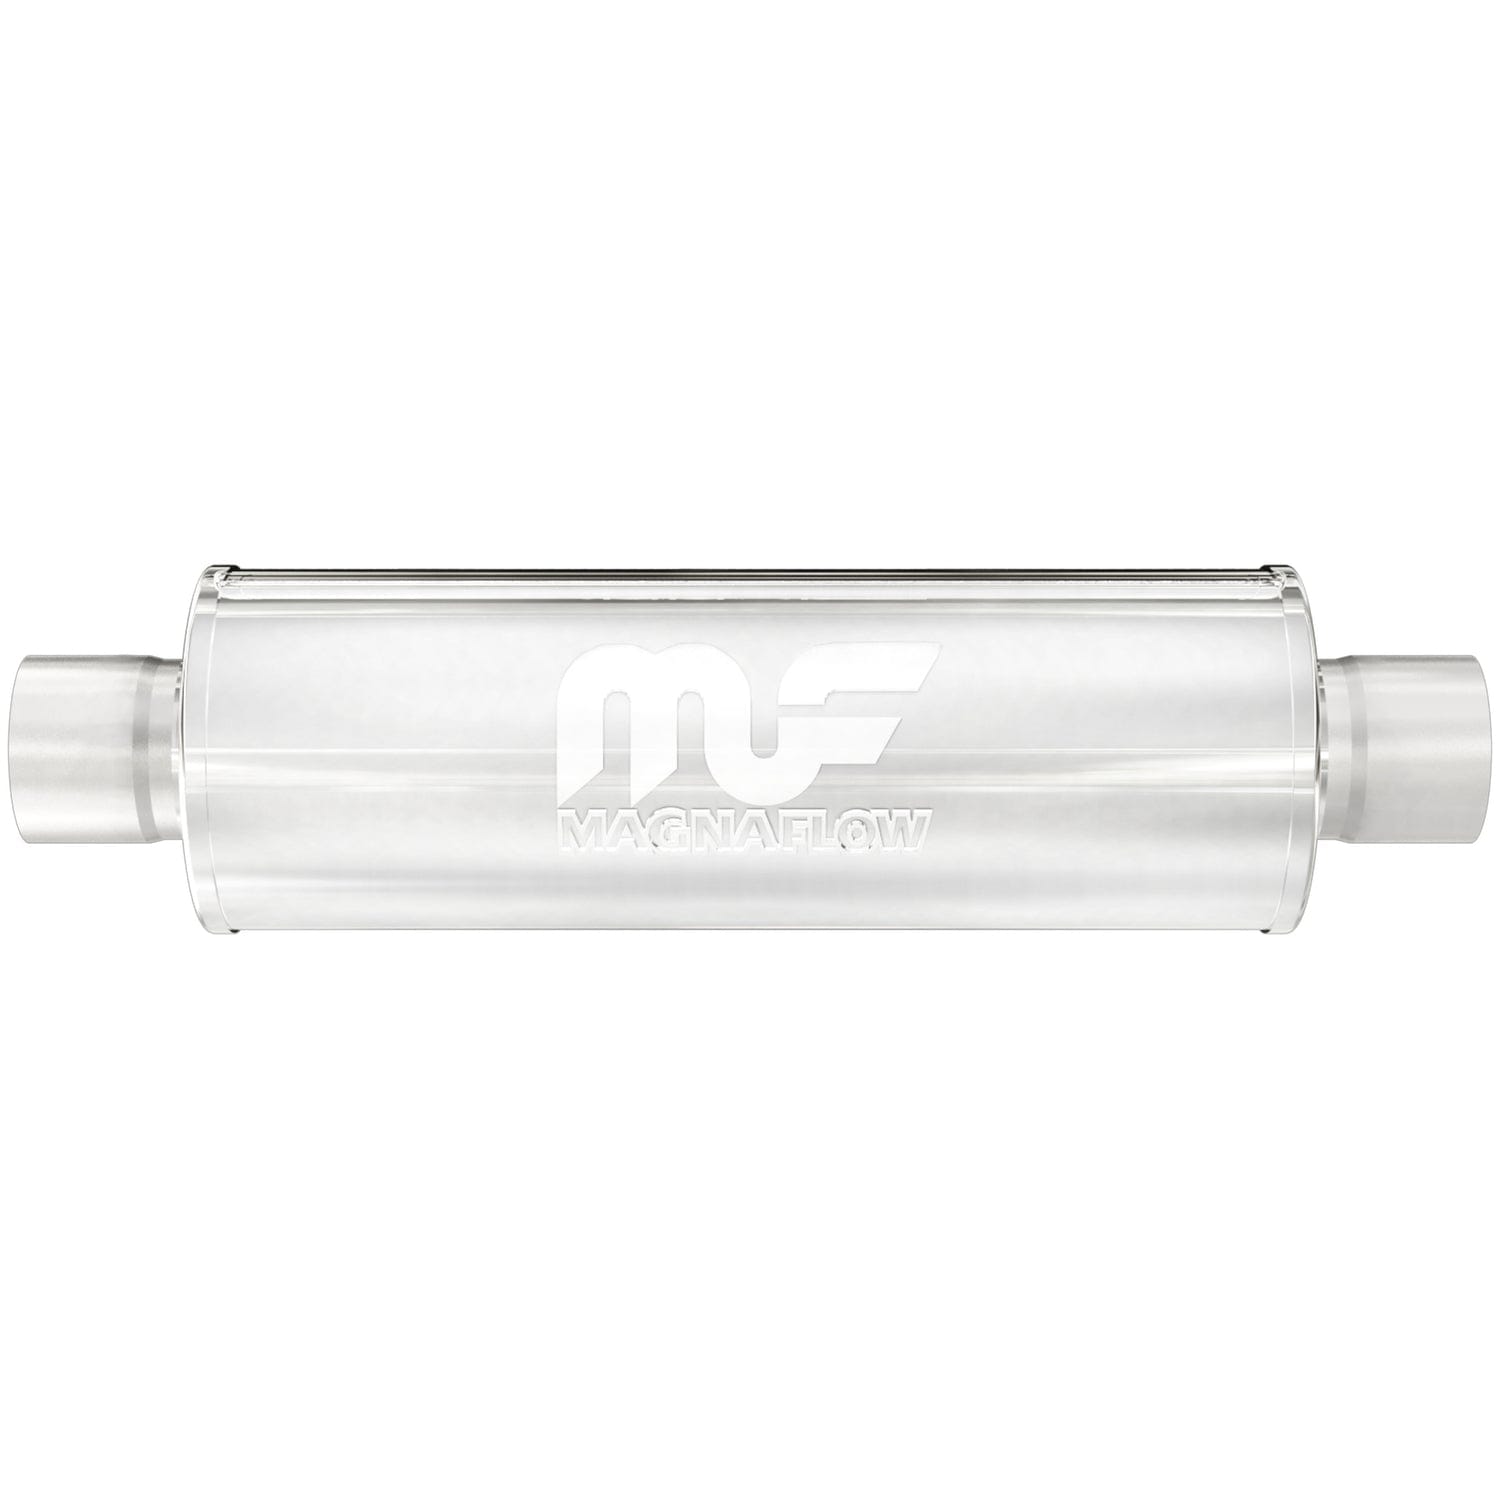 MagnaFlow 6in. Round Straight-Through Performance Exhaust Muffler 12644